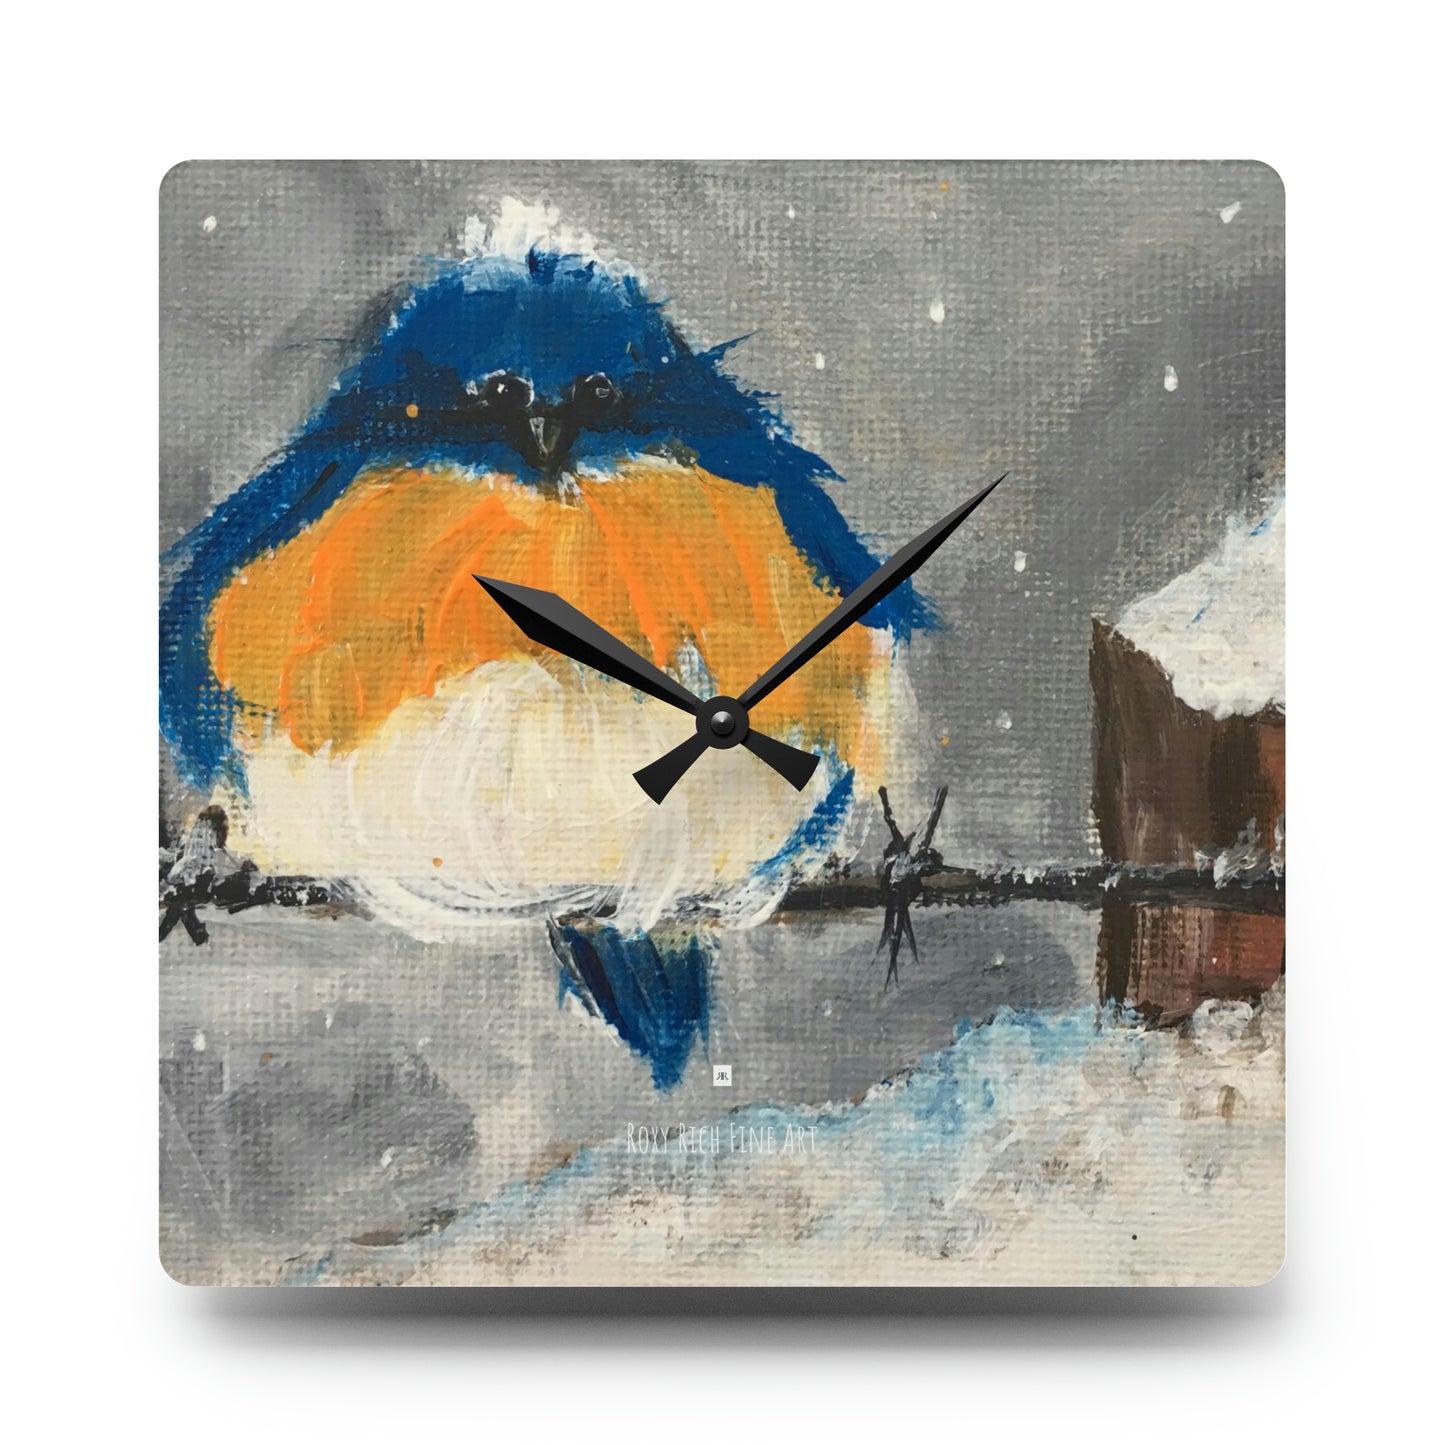 Reloj de pared acrílico con pájaro azul gordo y esponjoso en la nieve